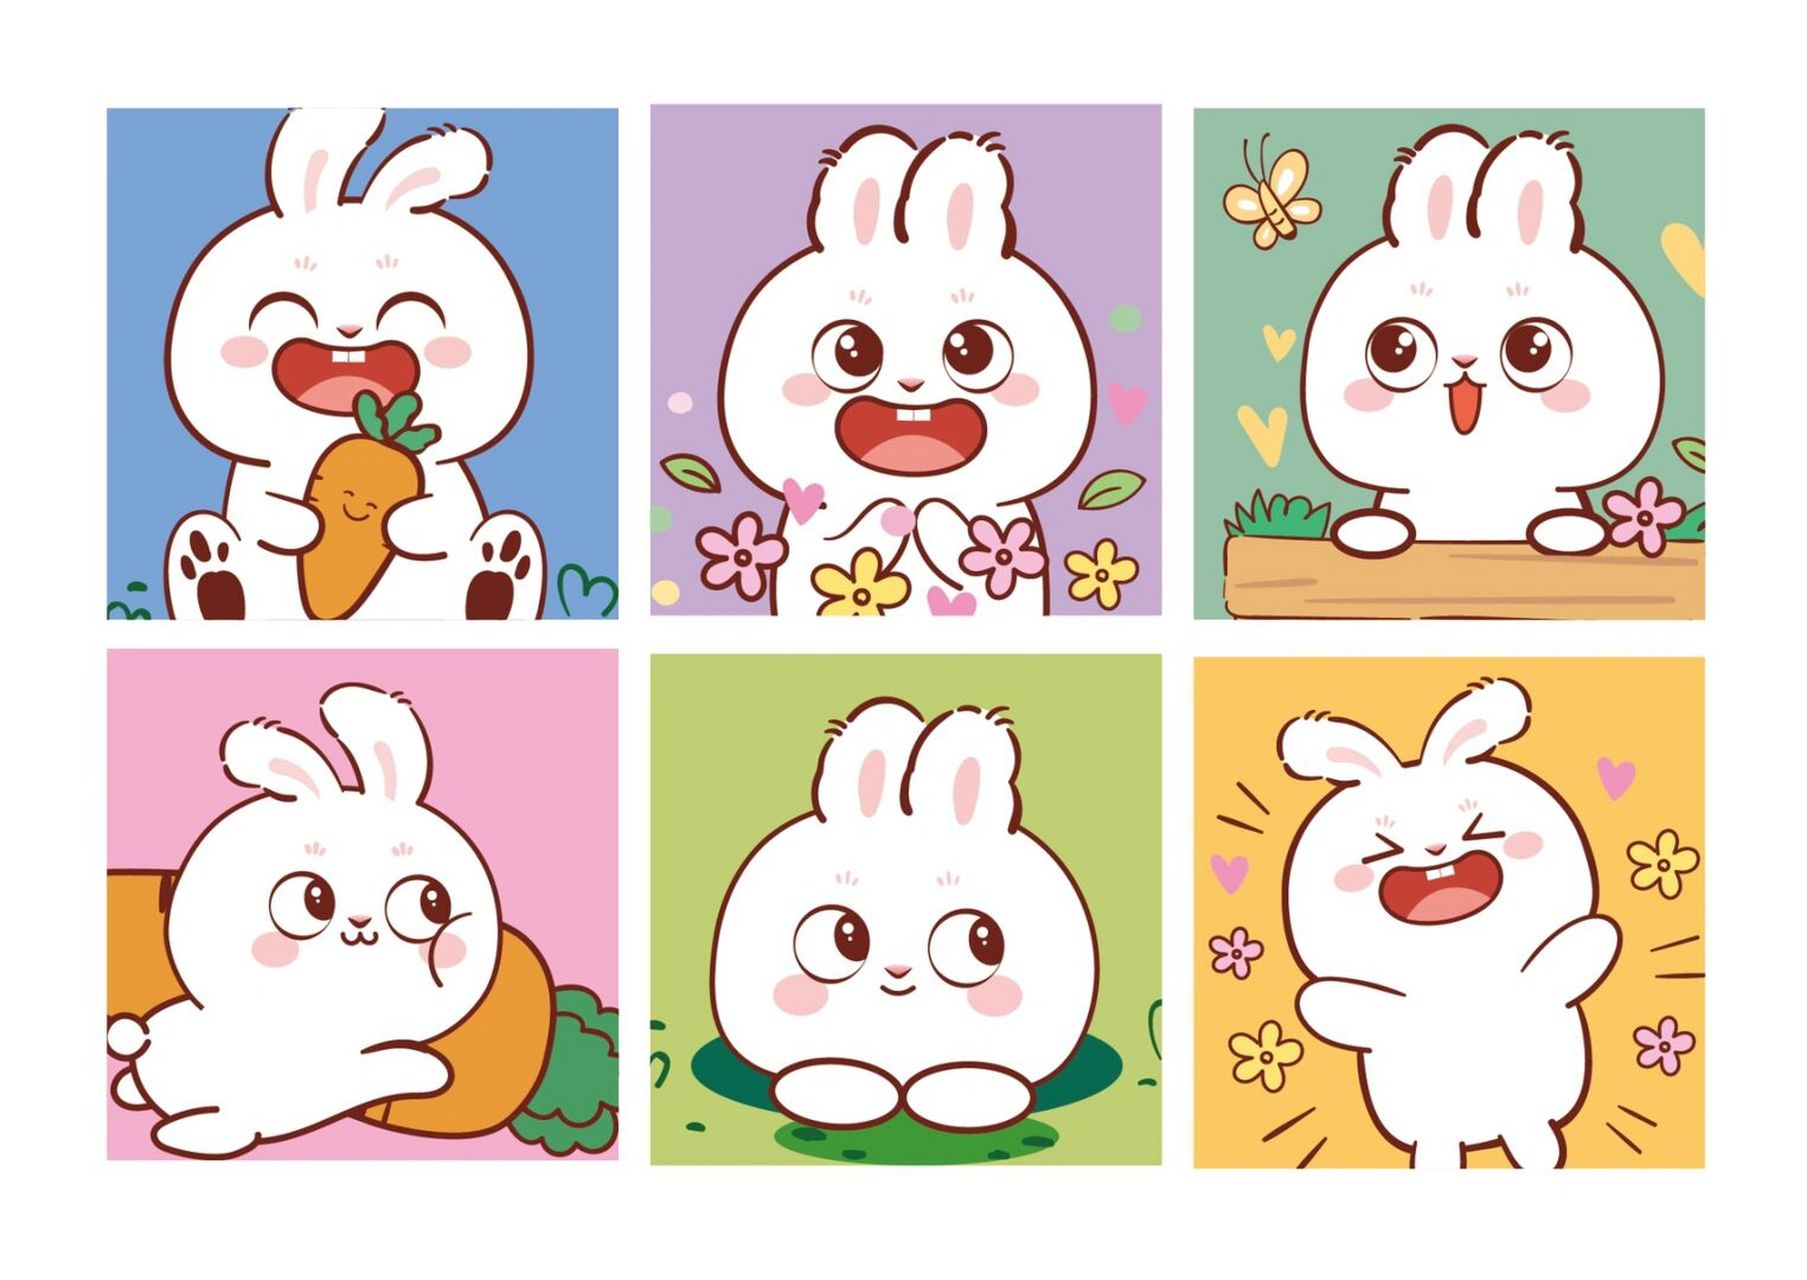 兔小萌可爱卡通形象设计 兔子插画 可定制设计ip卡通形象 可接春节